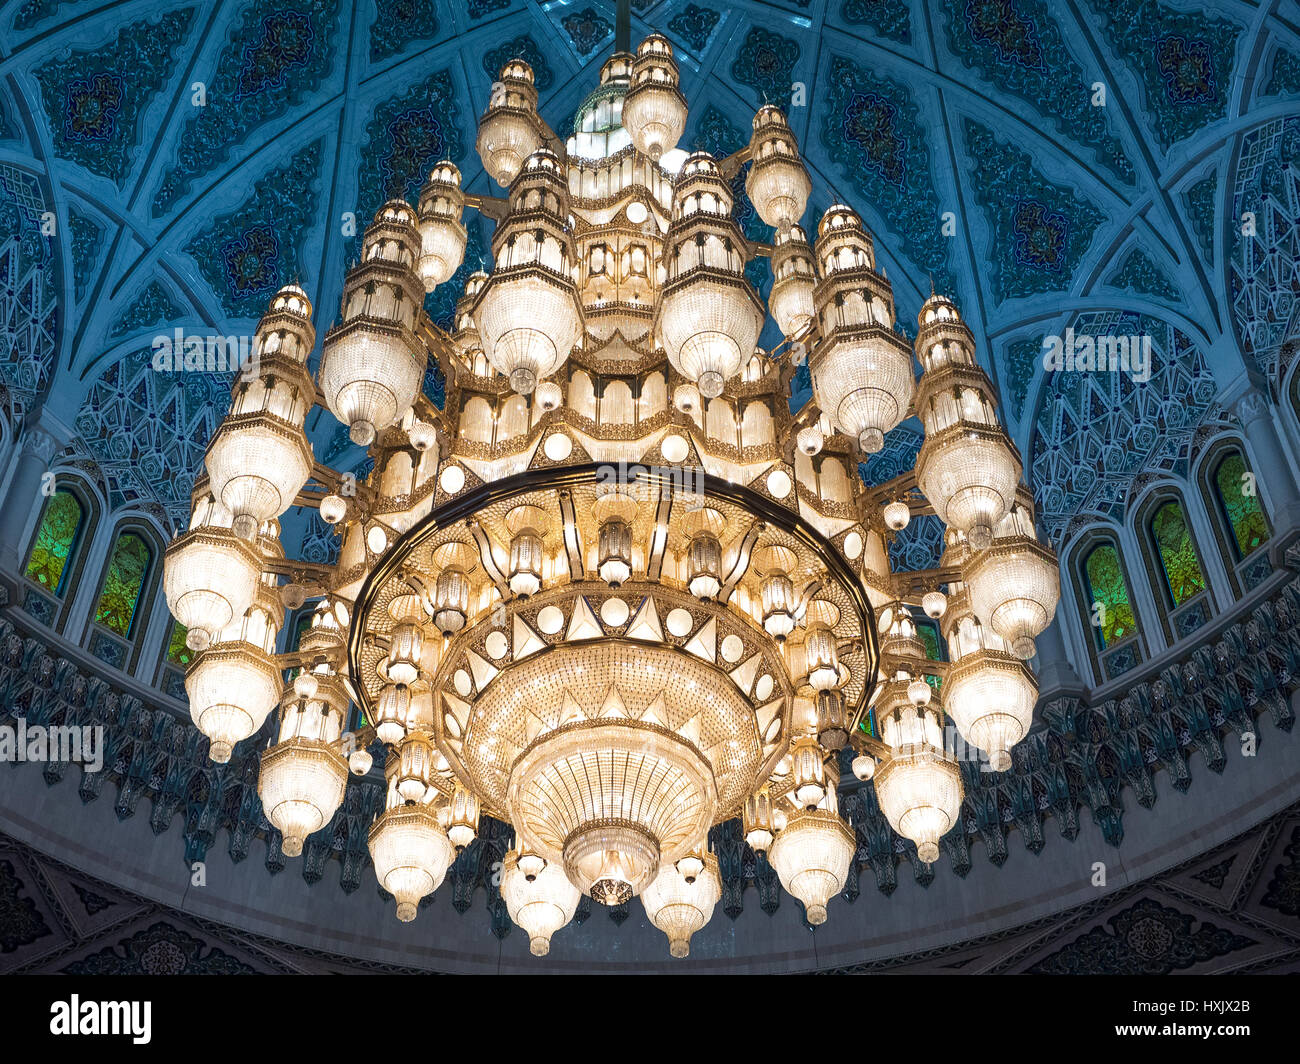 Lampada gigante fatta con oltre 600.000 cristalli nella sala di preghiera del Sultano Qaboos grande moschea di Muscat Oman. Foto Stock